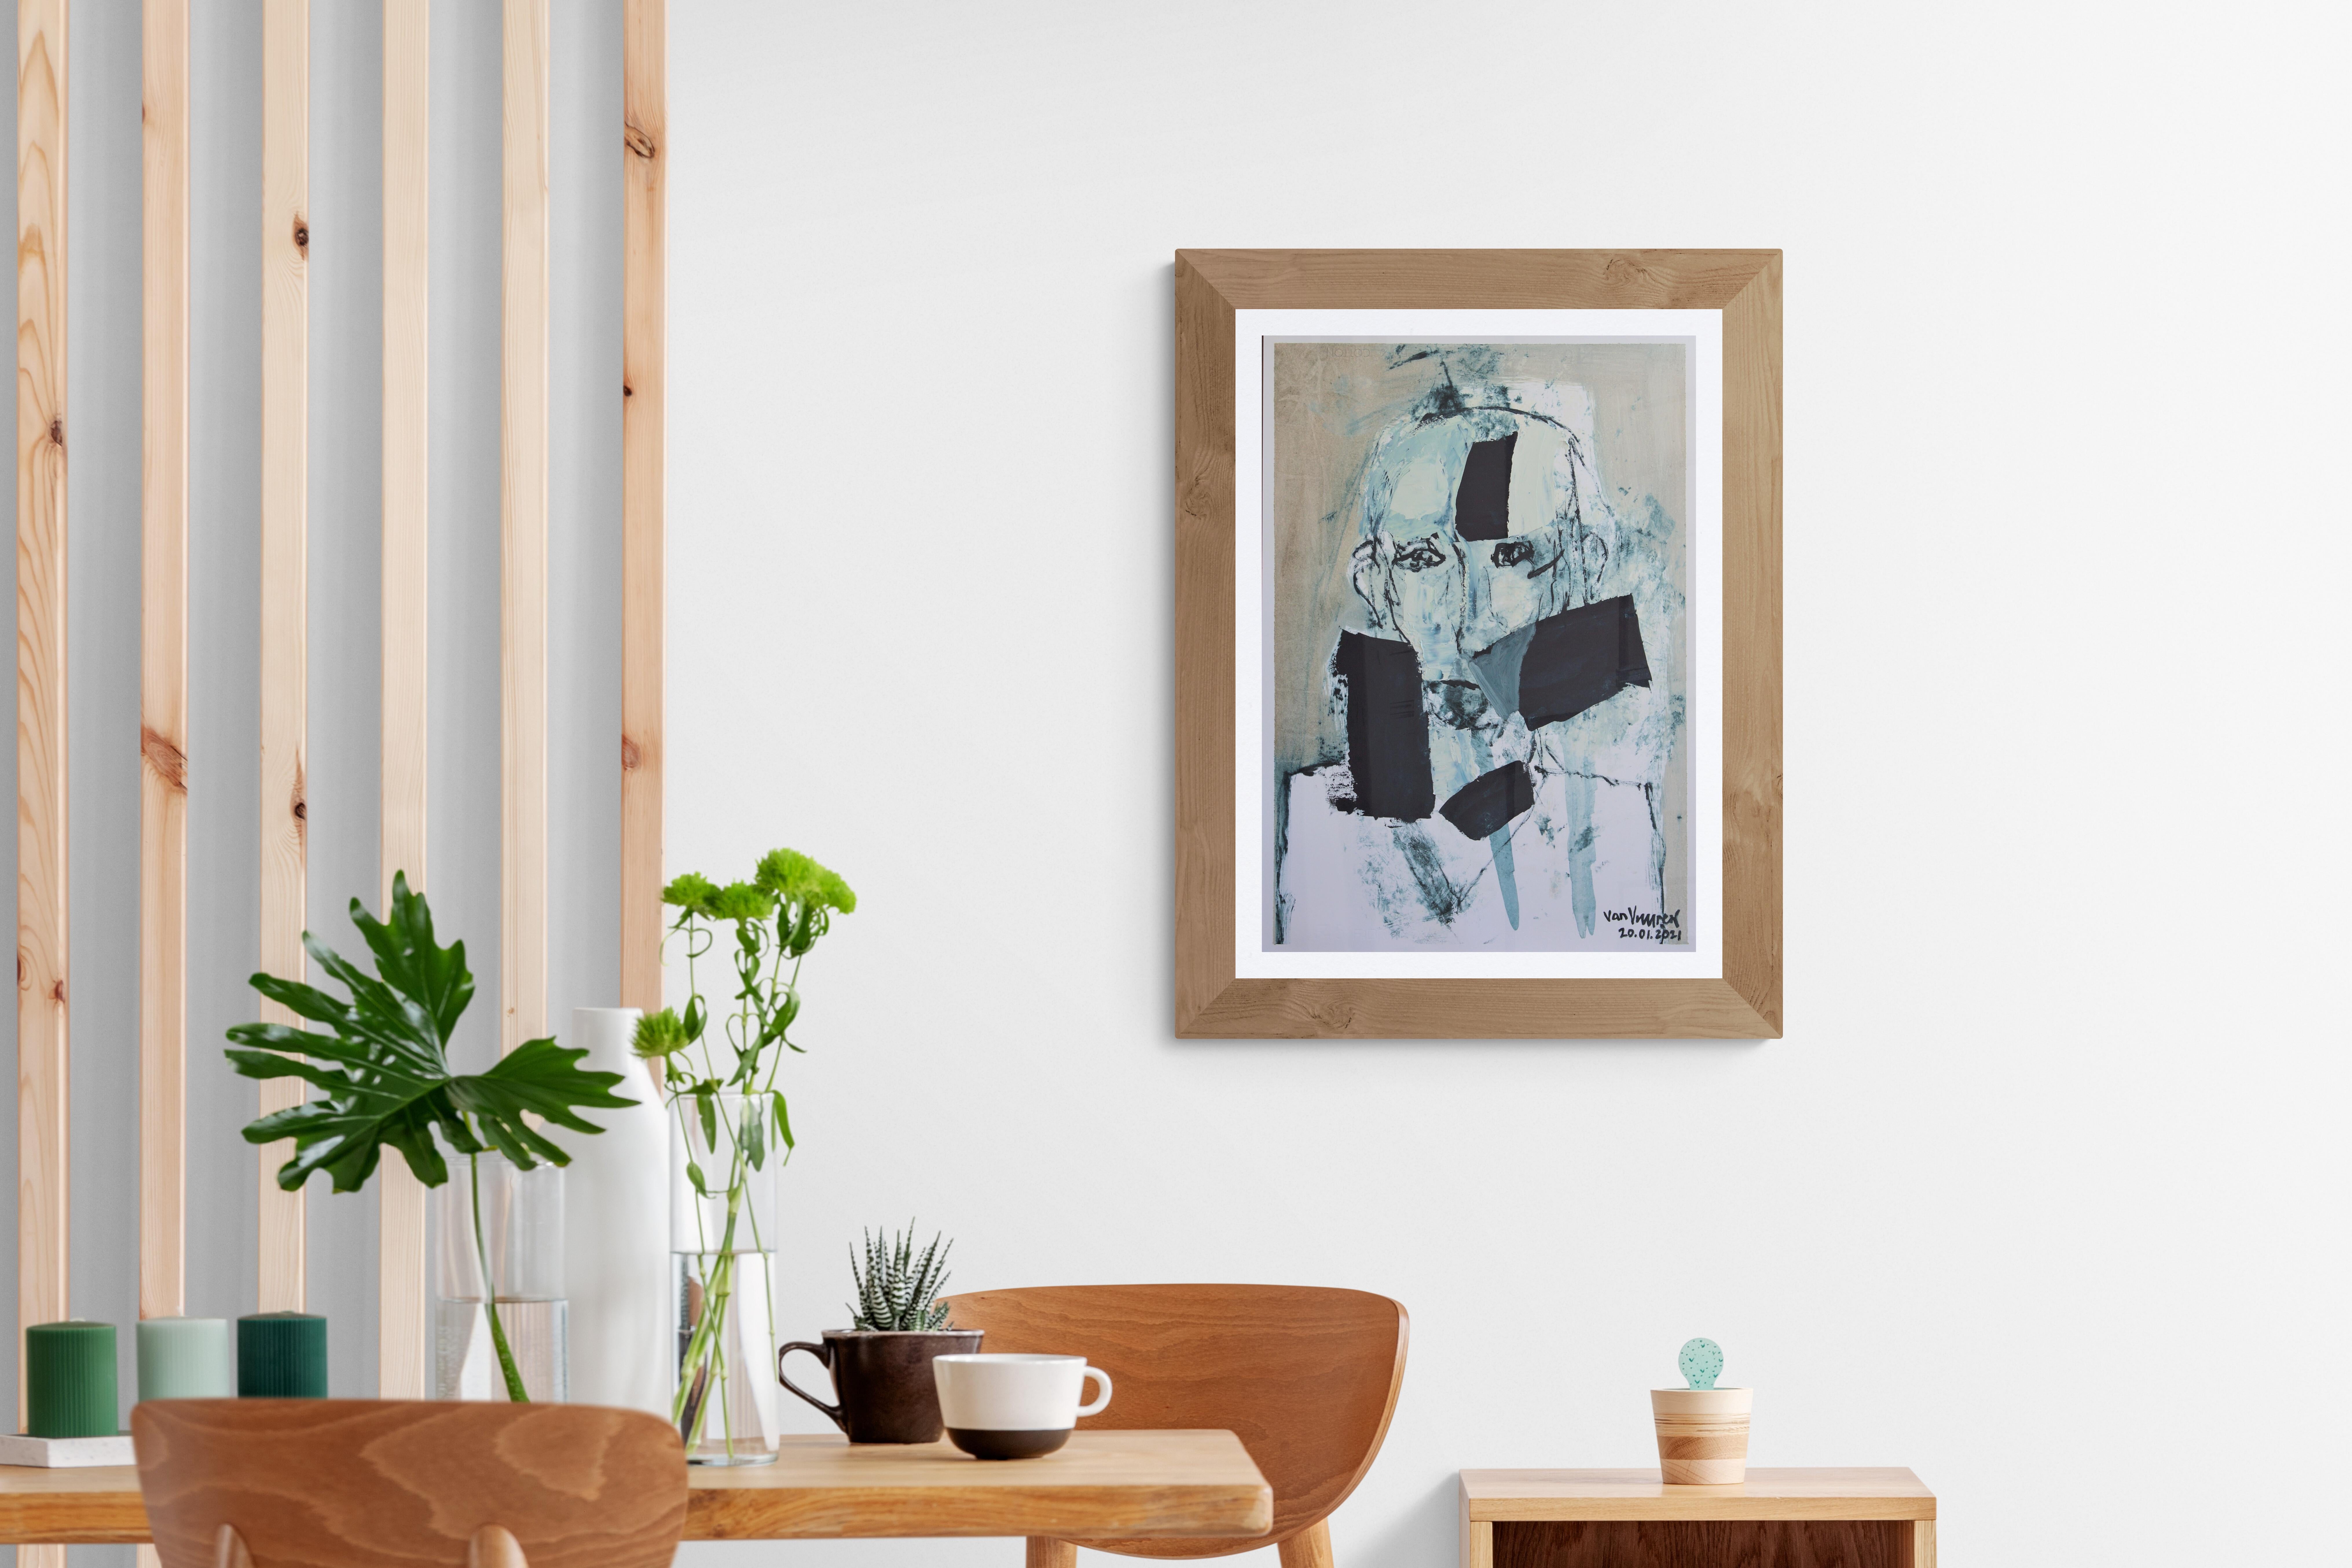 Portrait expressionniste, peinture à l'huile sur papier « Buste of Man with Black Elements » (Bâtte d'homme avec des éléments noirs) - Contemporain Painting par André François van Vuuren